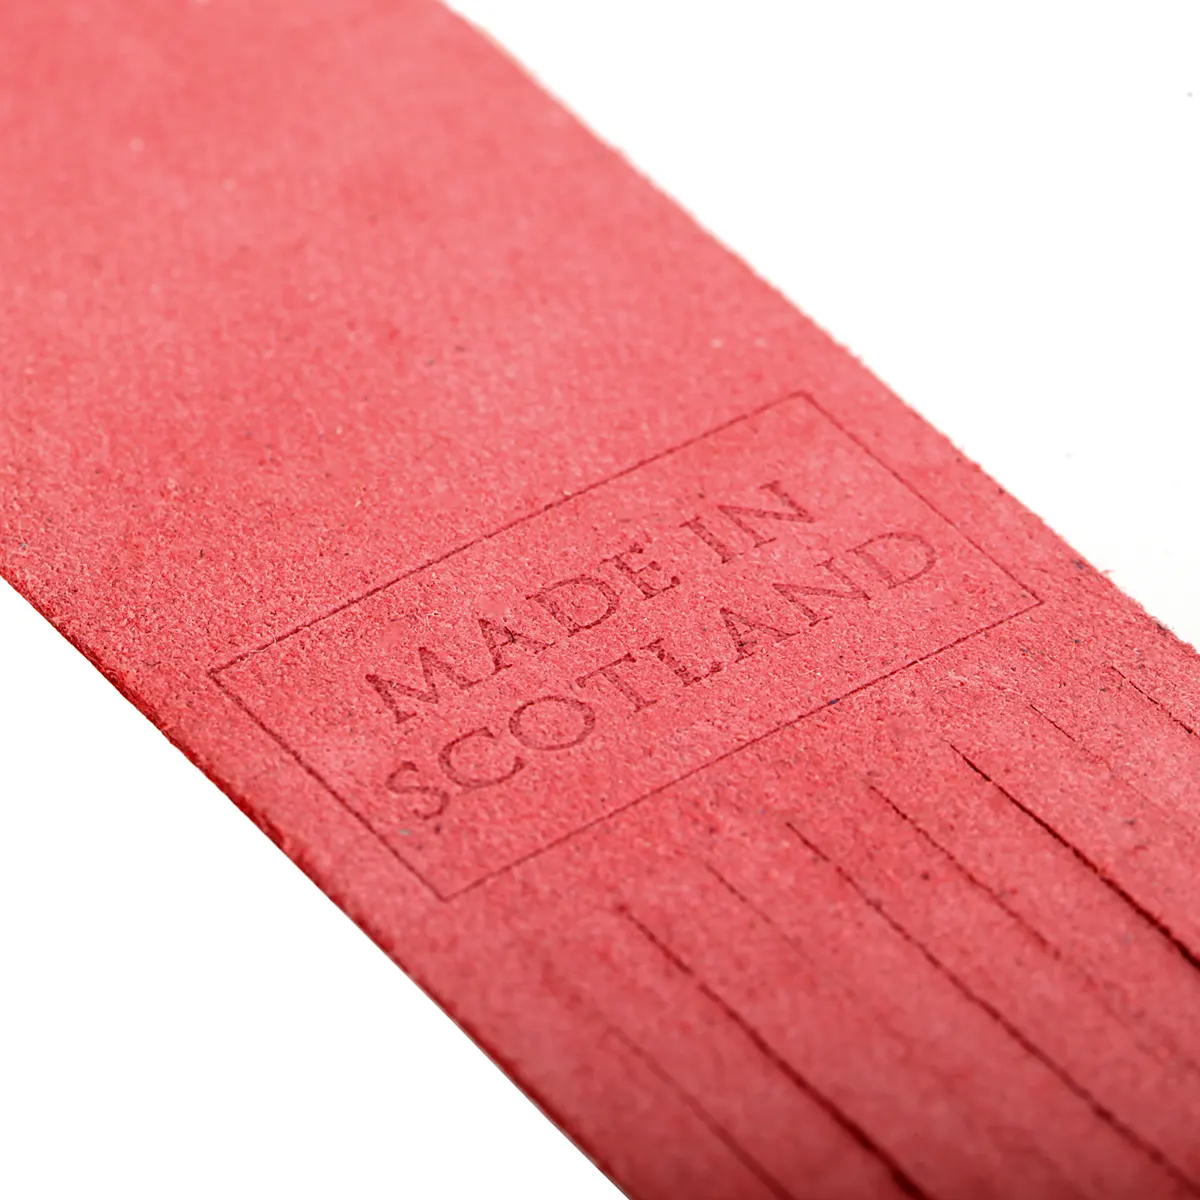 Inverness - Lesezeichen aus Leder in Rot - Made in Scotland